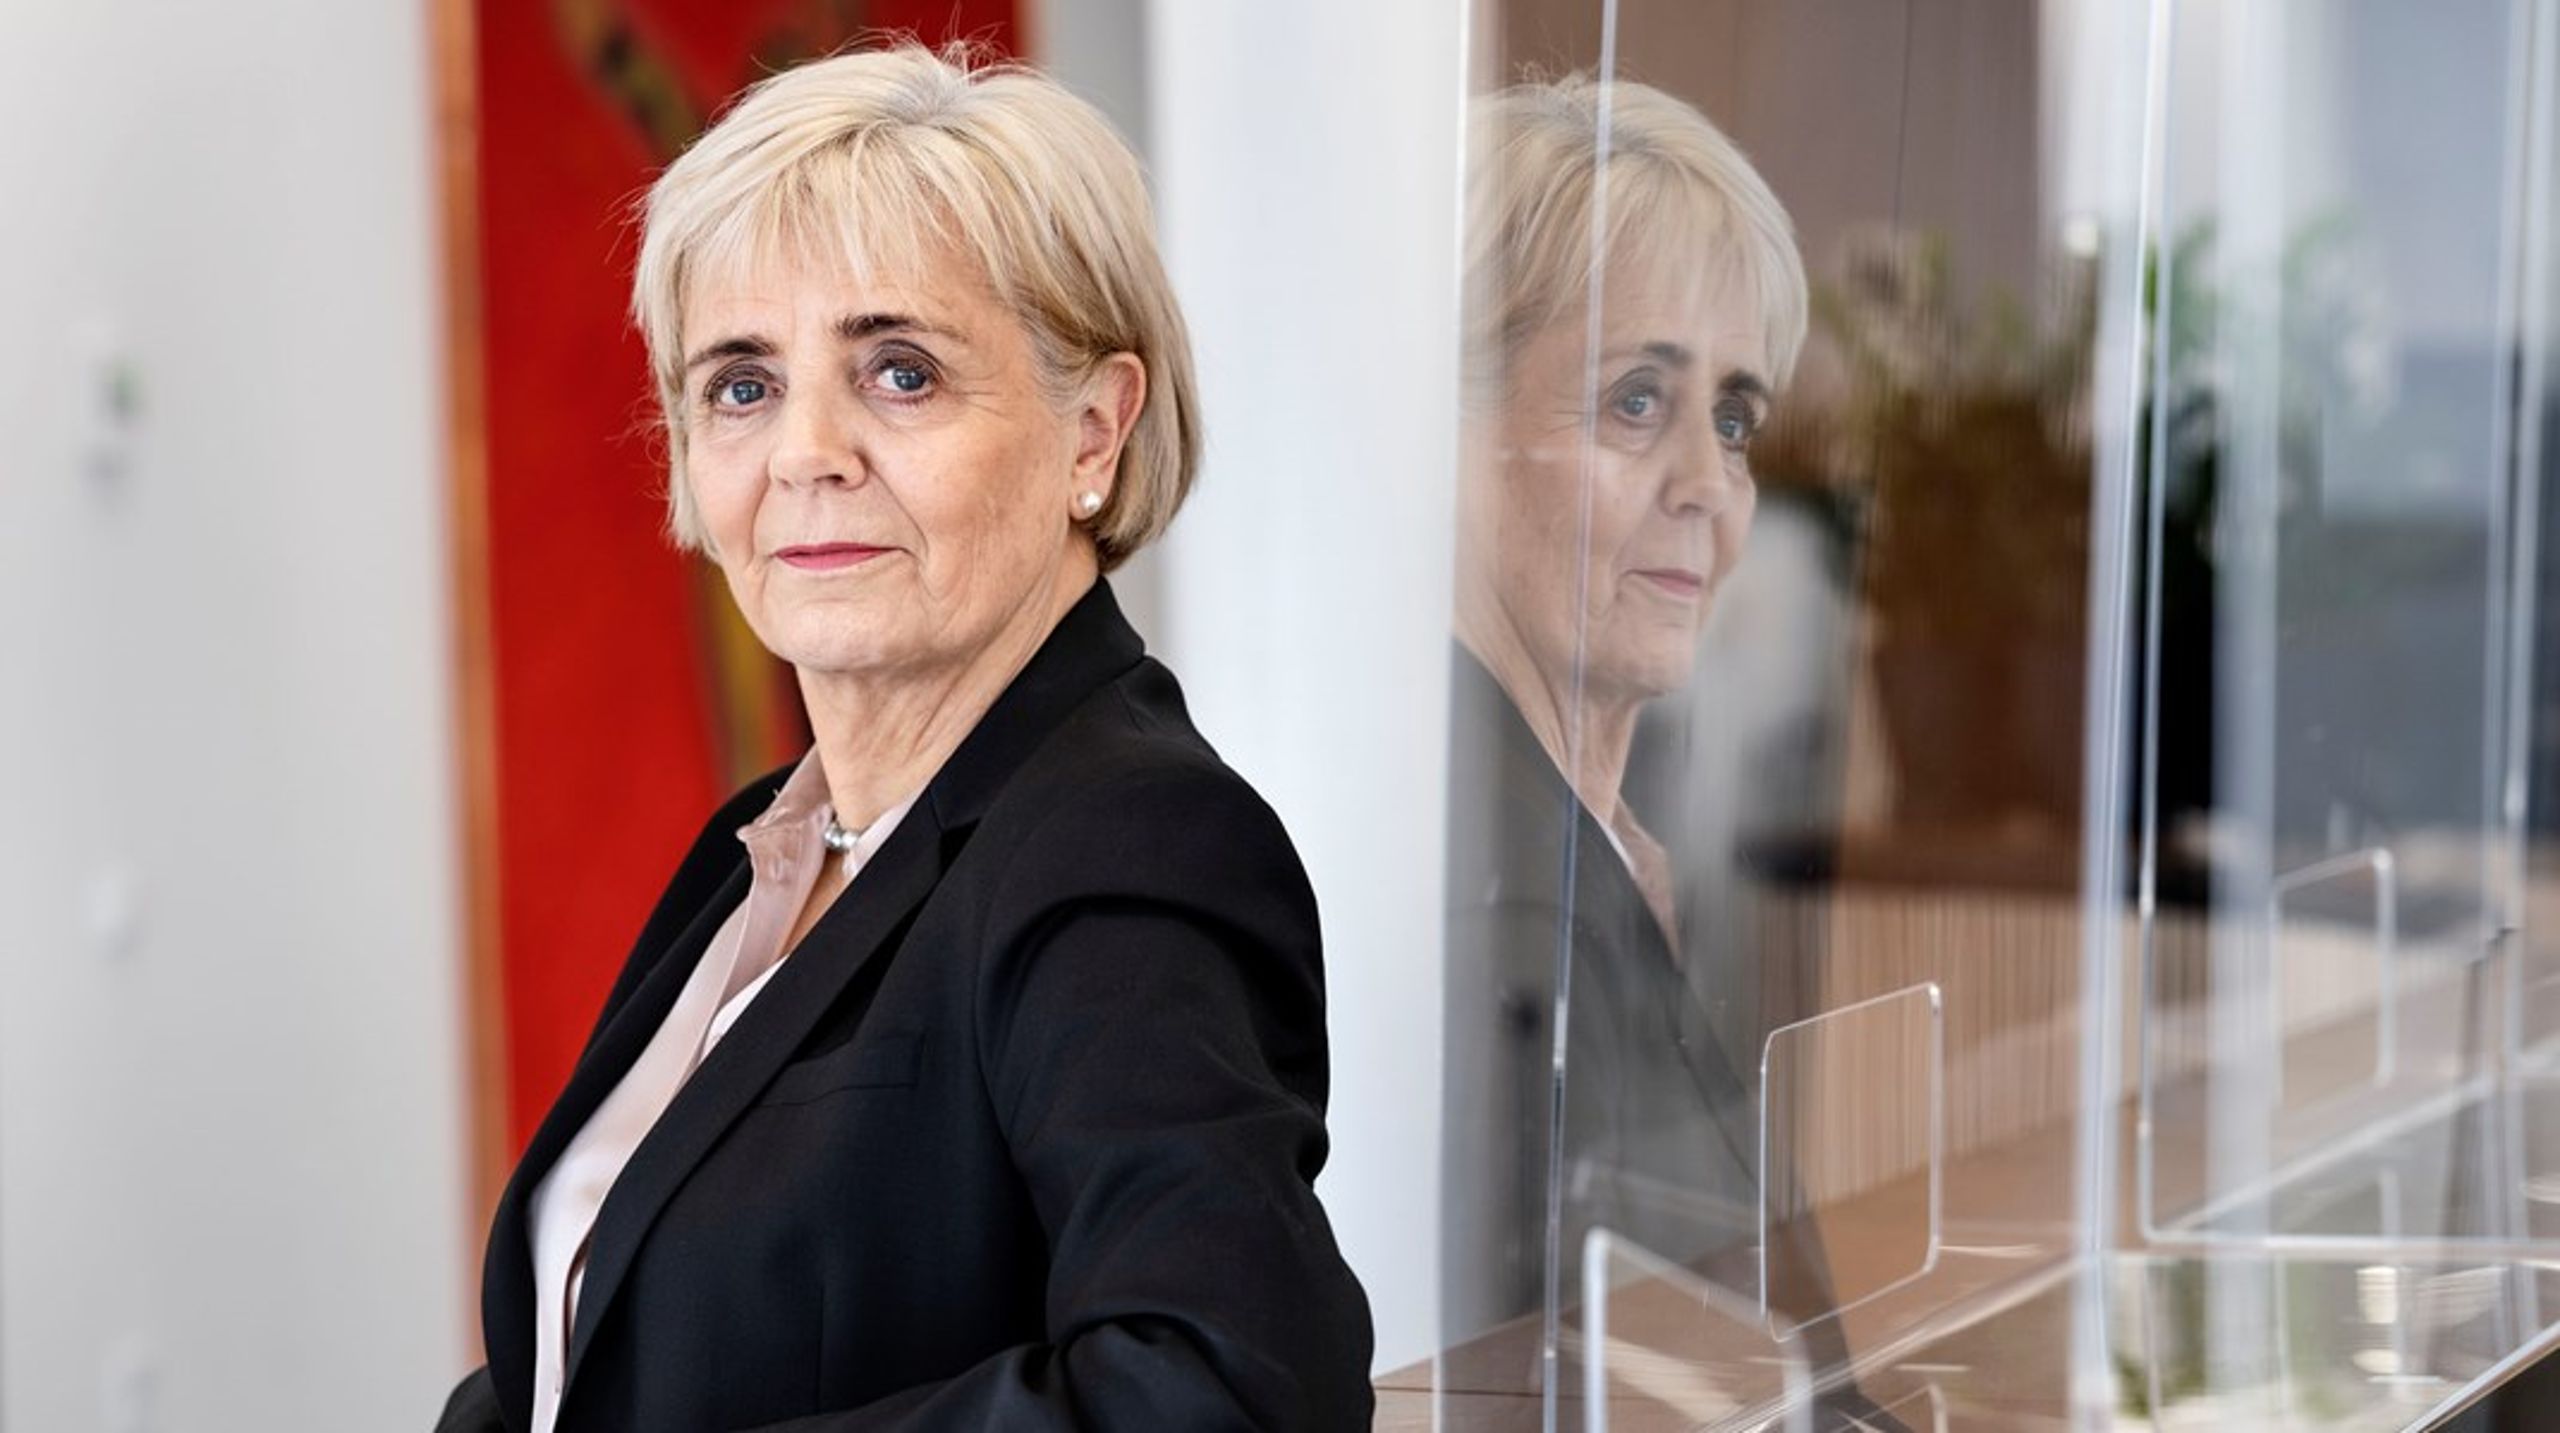 Frøsig har arbejdet i Sydbank siden 1994 og har været en del af bankens direktion siden 2008. Hun har været administrerende direktør siden 2010.